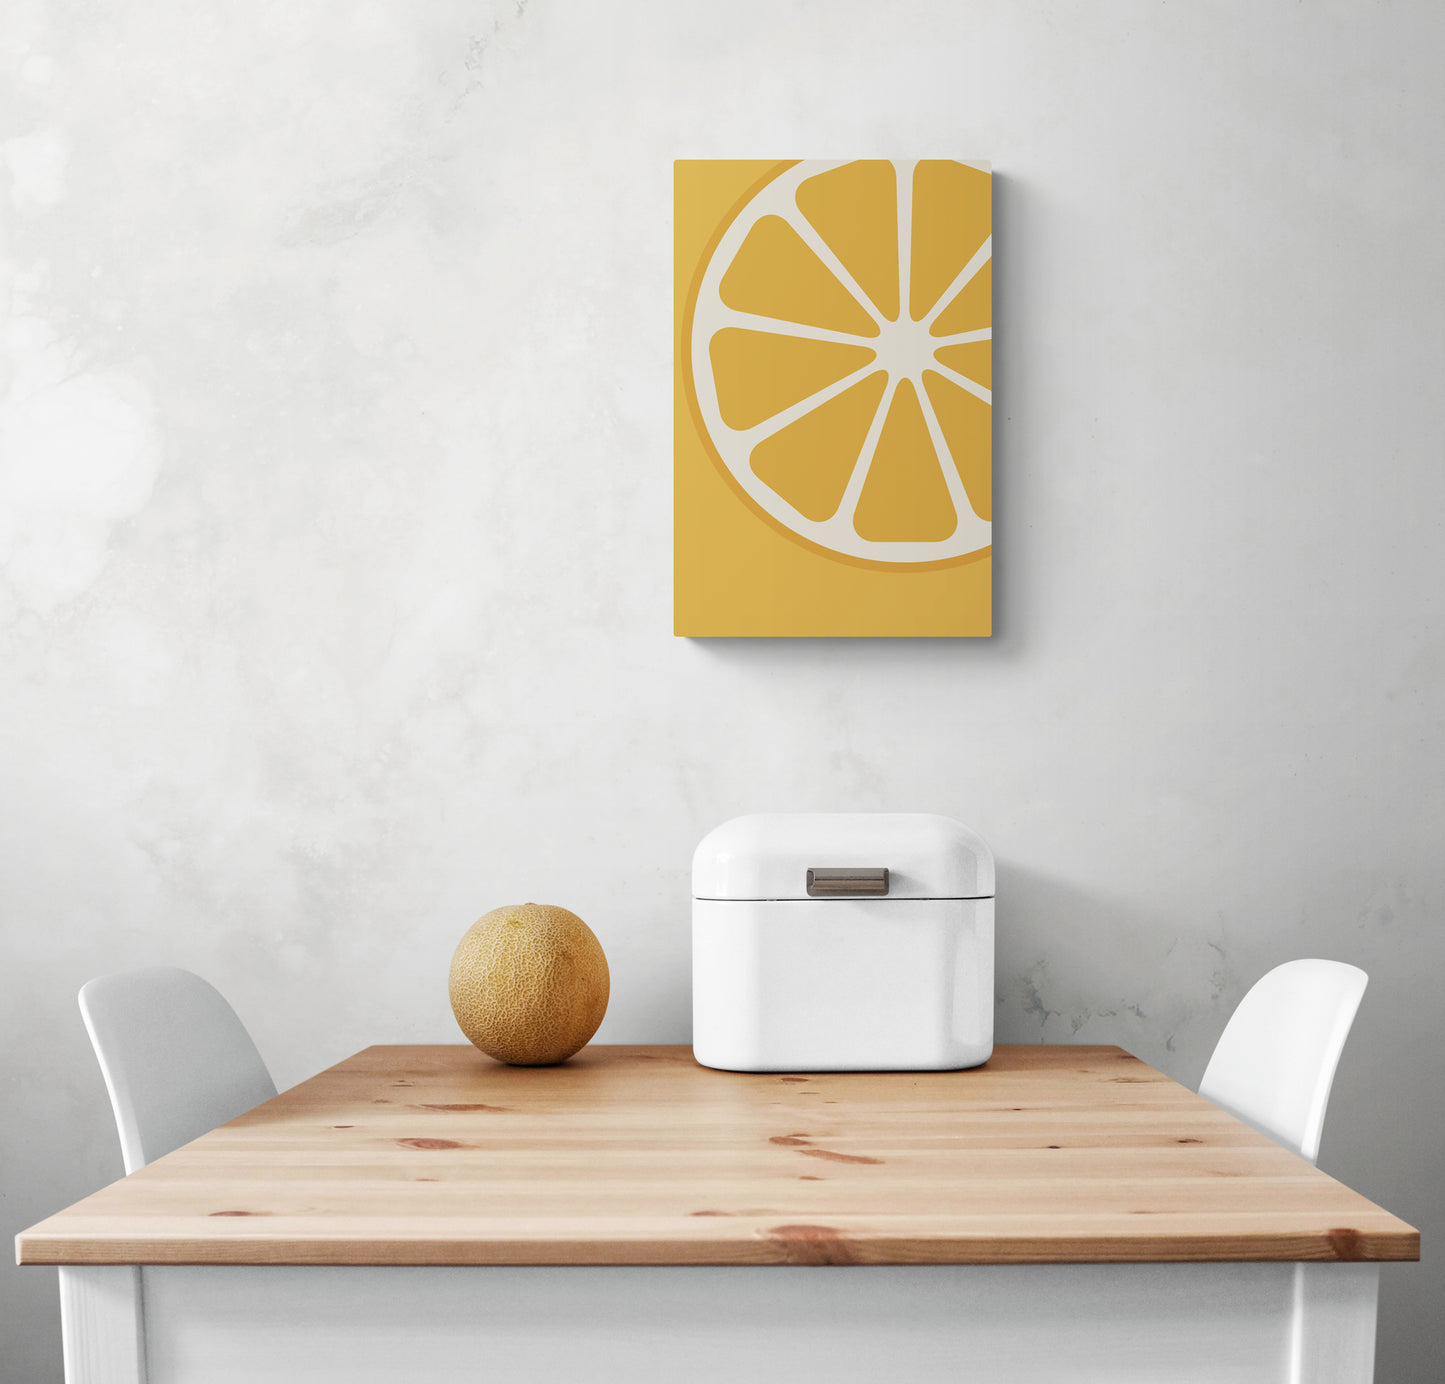  un petit tableau décoratif mural est accroché sur le mur blanc d'une cuisine. En dessous se trouvent une table en bois doré et deux chaises blanches. Sur la table se trouvent une corbeille à pain et un petit melon. Tous ces éléments créent un look coloré et harmonieux dans la pièce.